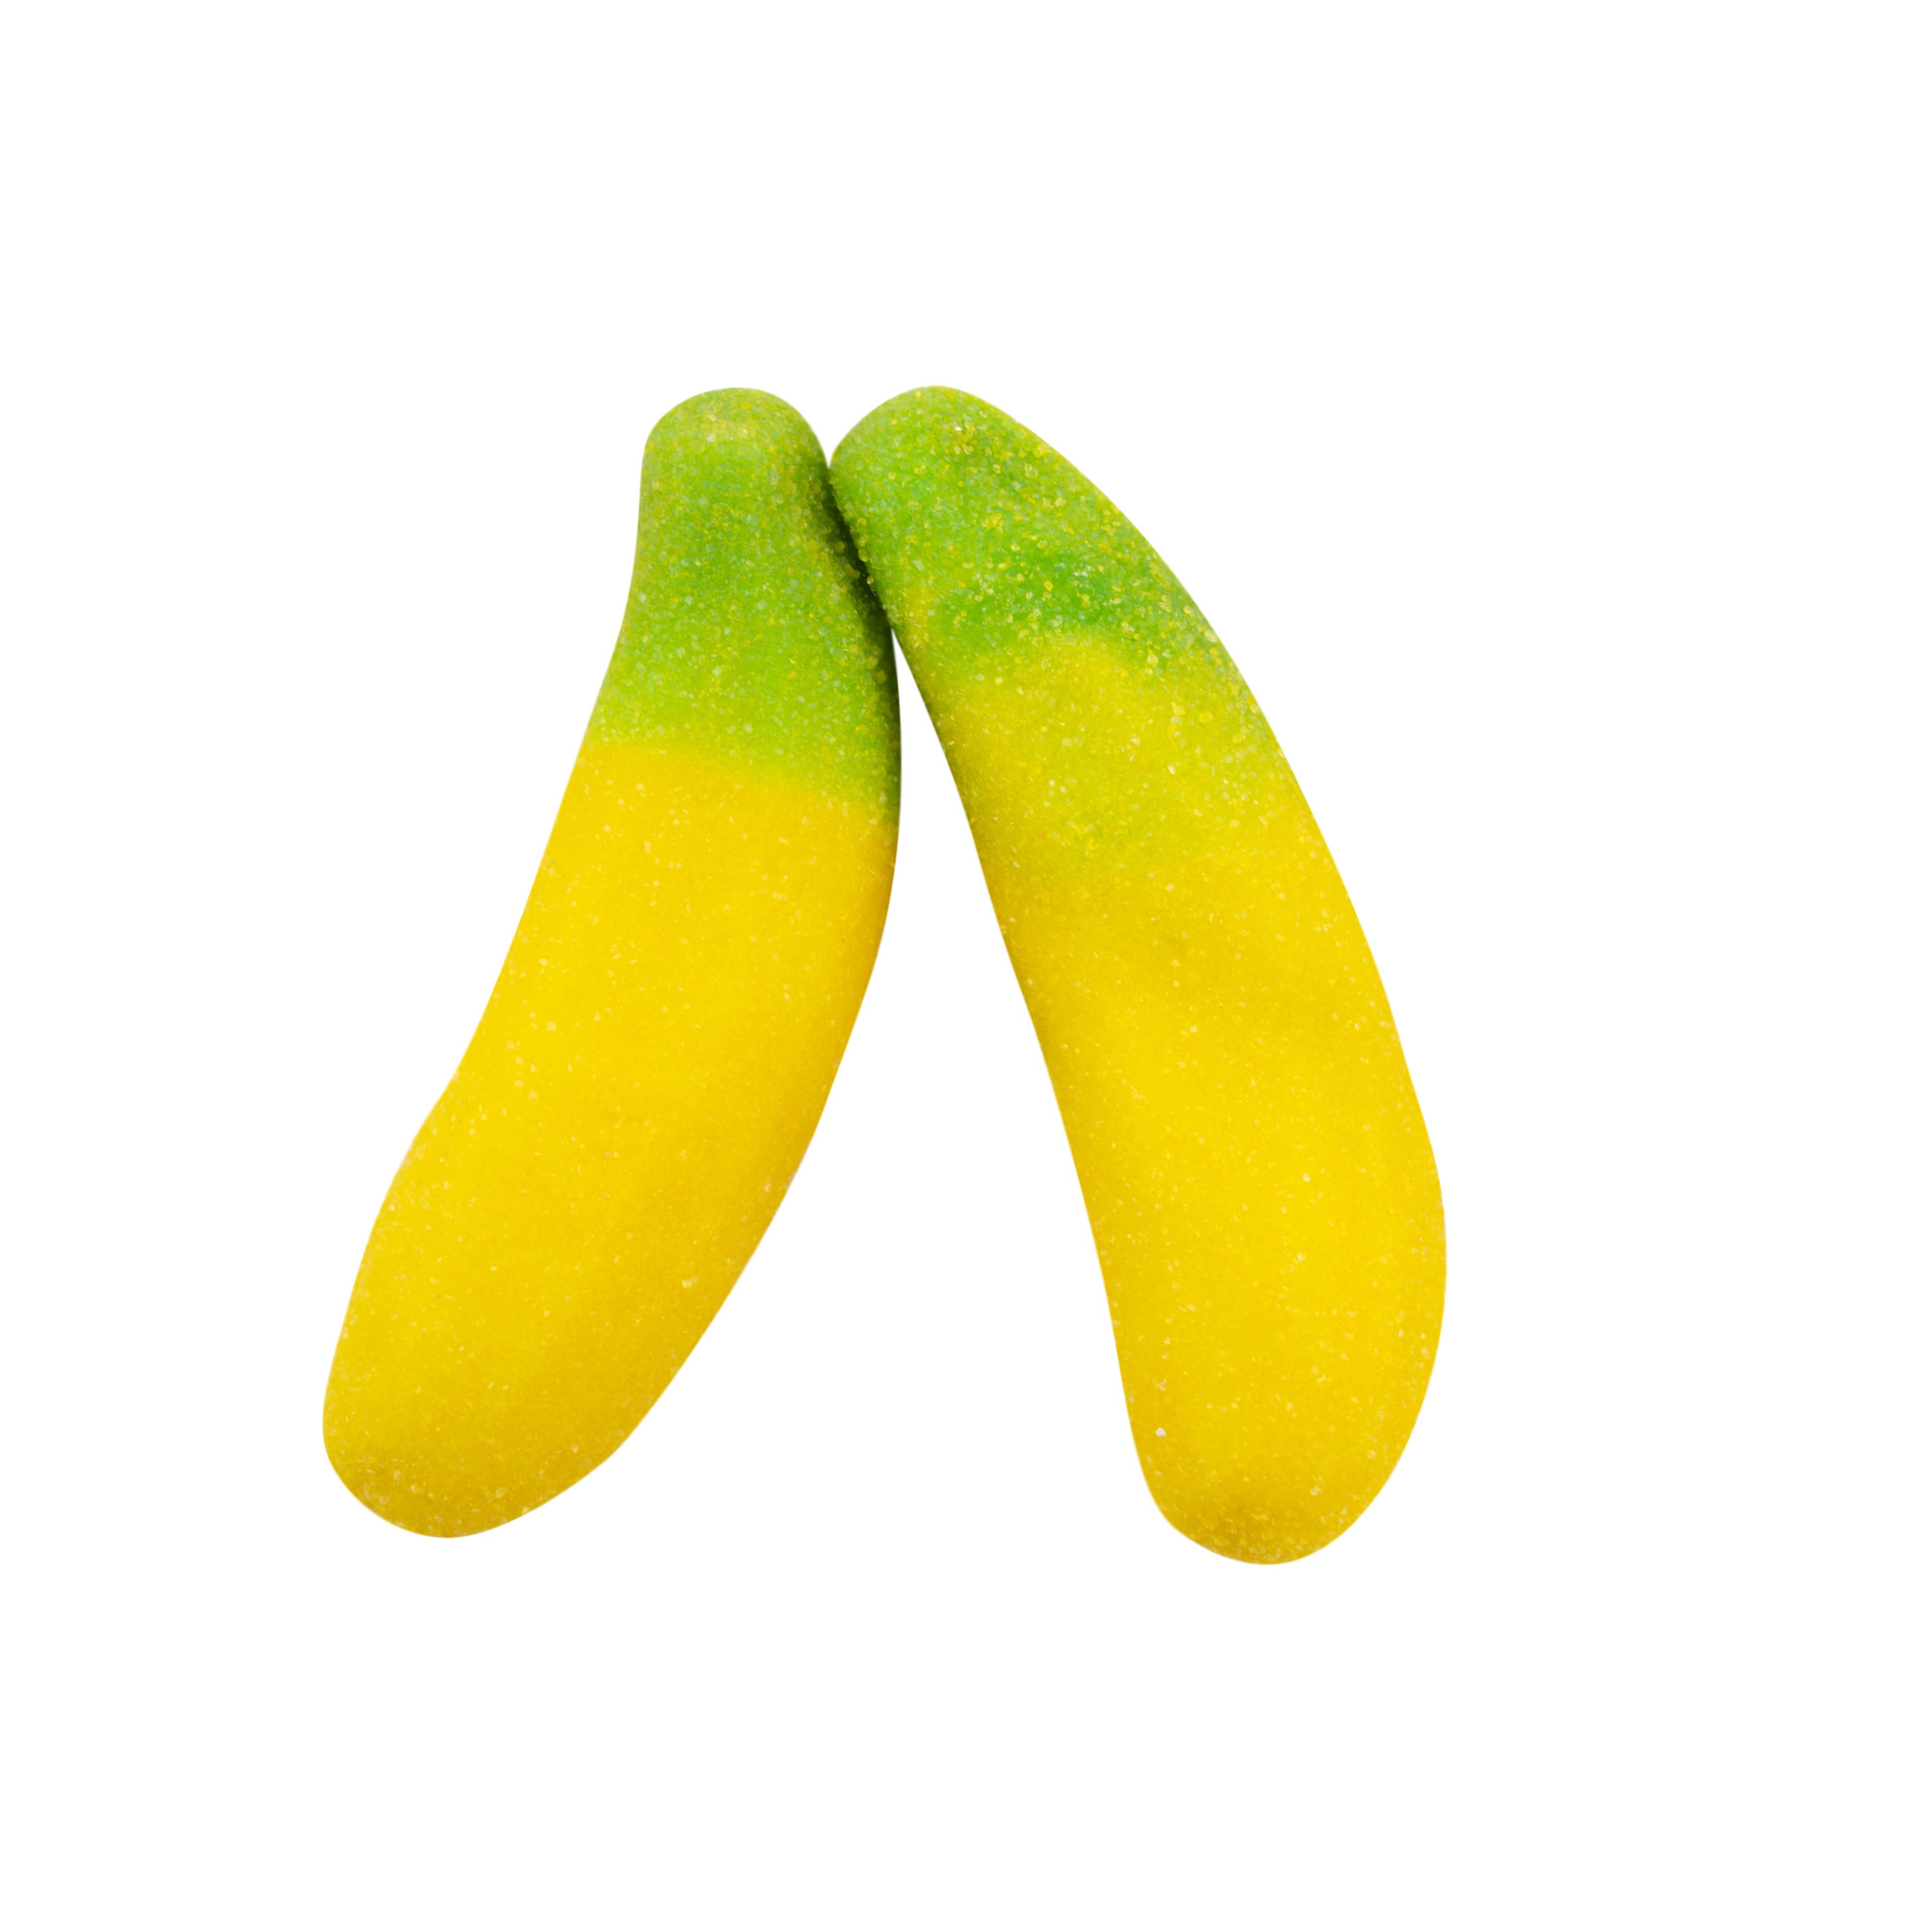 Banana plnené želé 19 g